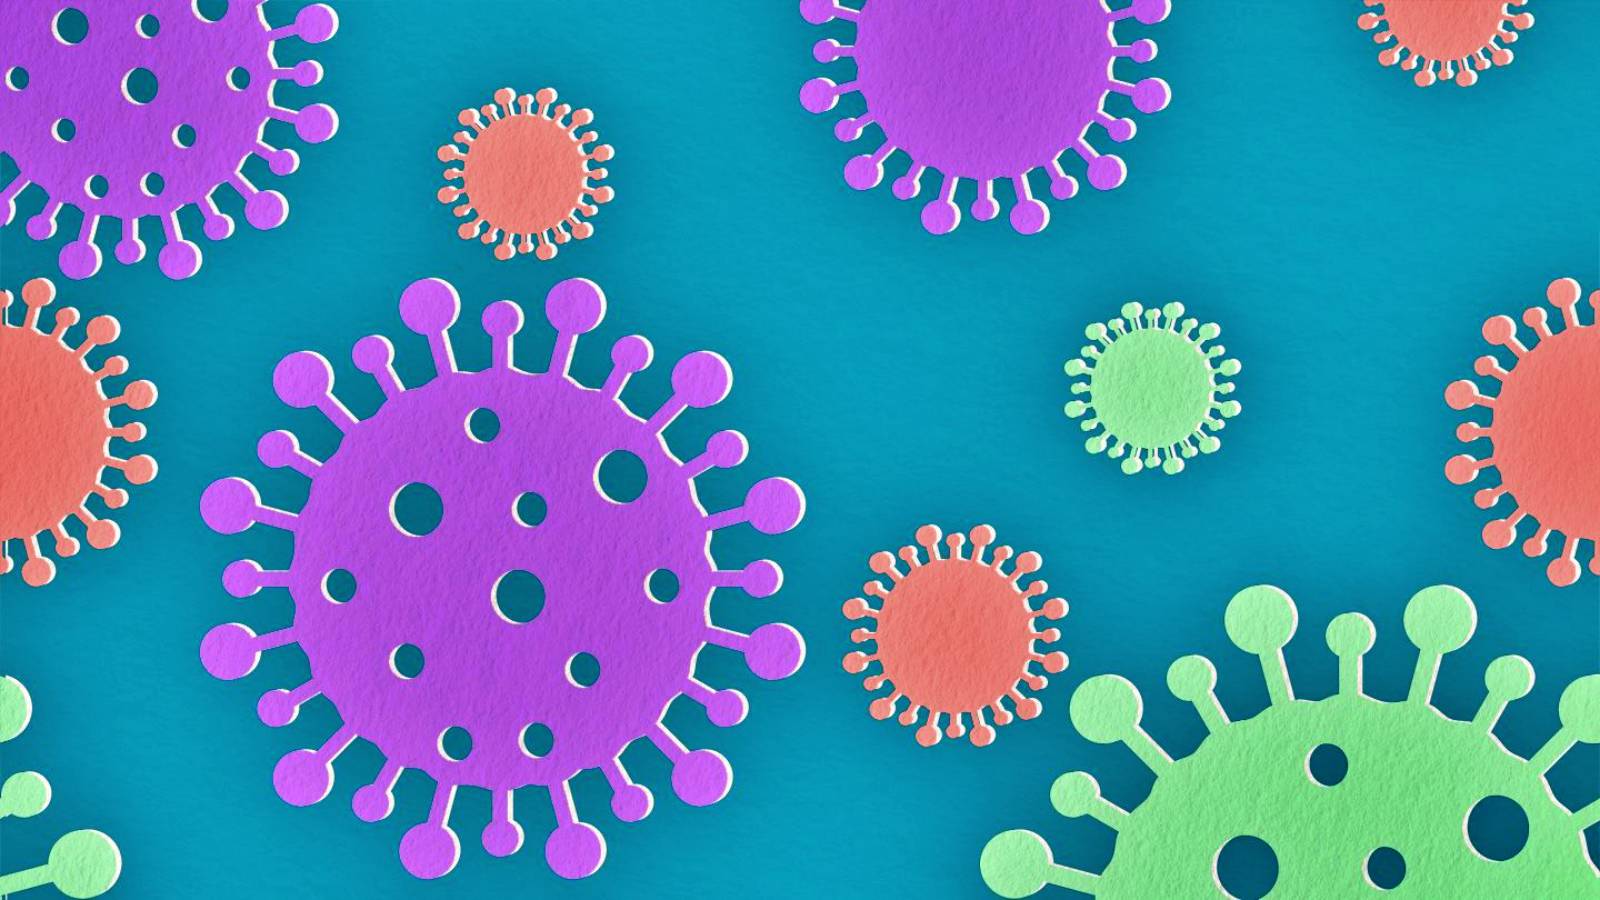 Coronavirus Rumänien Riesige Zahl an Infektionen offiziell am 23. Oktober 2021 bekannt gegeben